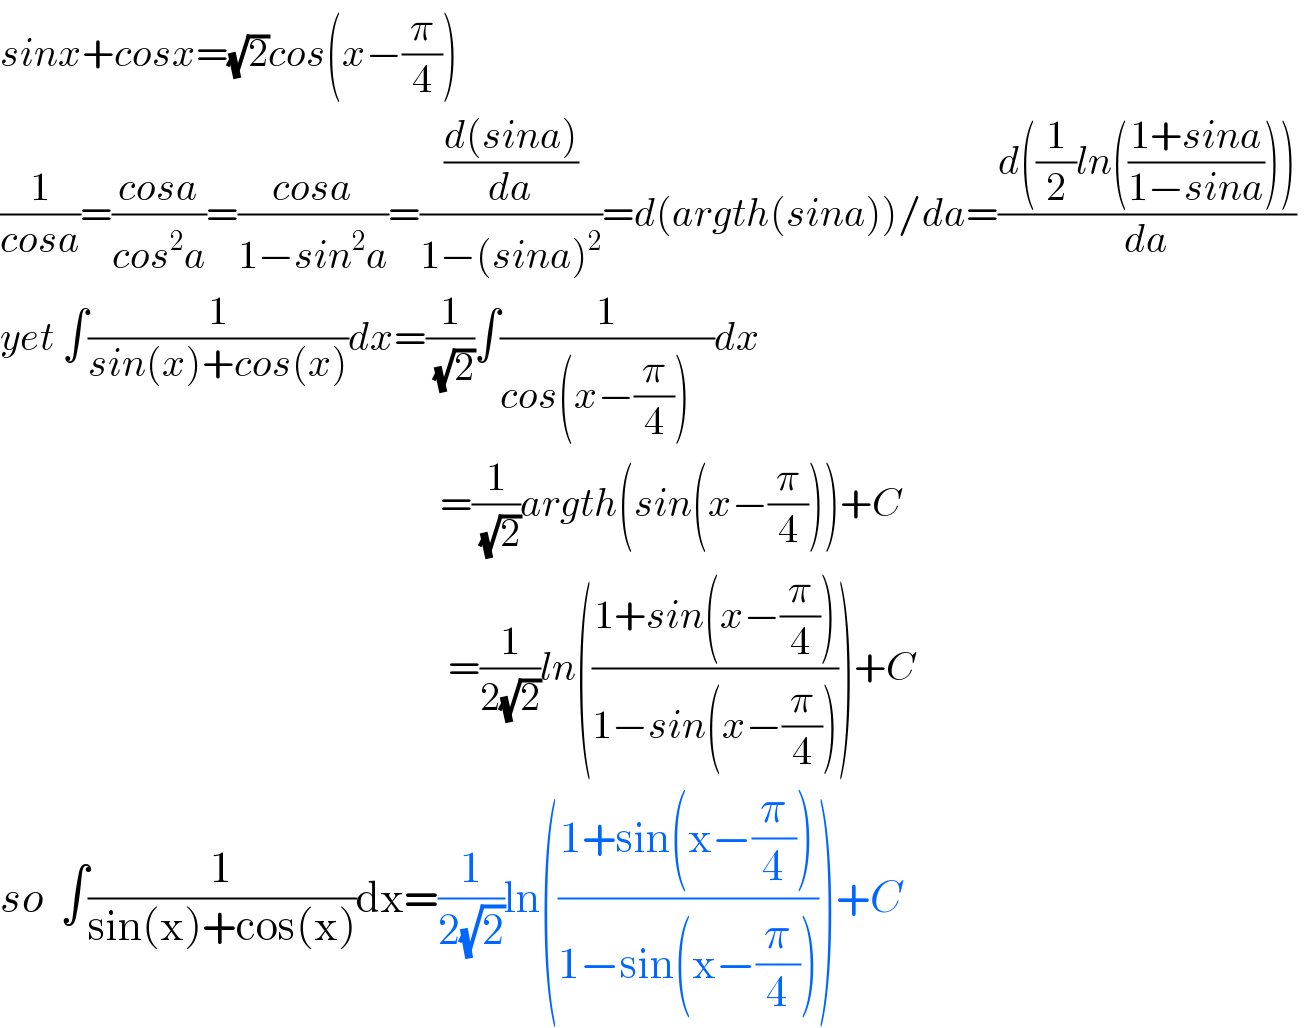 sinx+cosx=(√2)cos(x−(π/4))  (1/(cosa))=((cosa)/(cos^2 a))=((cosa)/(1−sin^2 a))=(((d(sina))/da)/(1−(sina)^2 ))=d(argth(sina))/da=((d((1/2)ln(((1+sina)/(1−sina)))))/da)    yet ∫(1/(sin(x)+cos(x)))dx=(1/(√2))∫(1/(cos(x−(π/4))   ))dx                                                              =(1/(√2))argth(sin(x−(π/4)))+C                                                          =(1/(2(√2)))ln(((1+sin(x−(π/4)))/(1−sin(x−(π/4)))))+C  so  ∫(1/(sin(x)+cos(x)))dx=(1/(2(√2)))ln(((1+sin(x−(π/4)))/(1−sin(x−(π/4)))))+C  